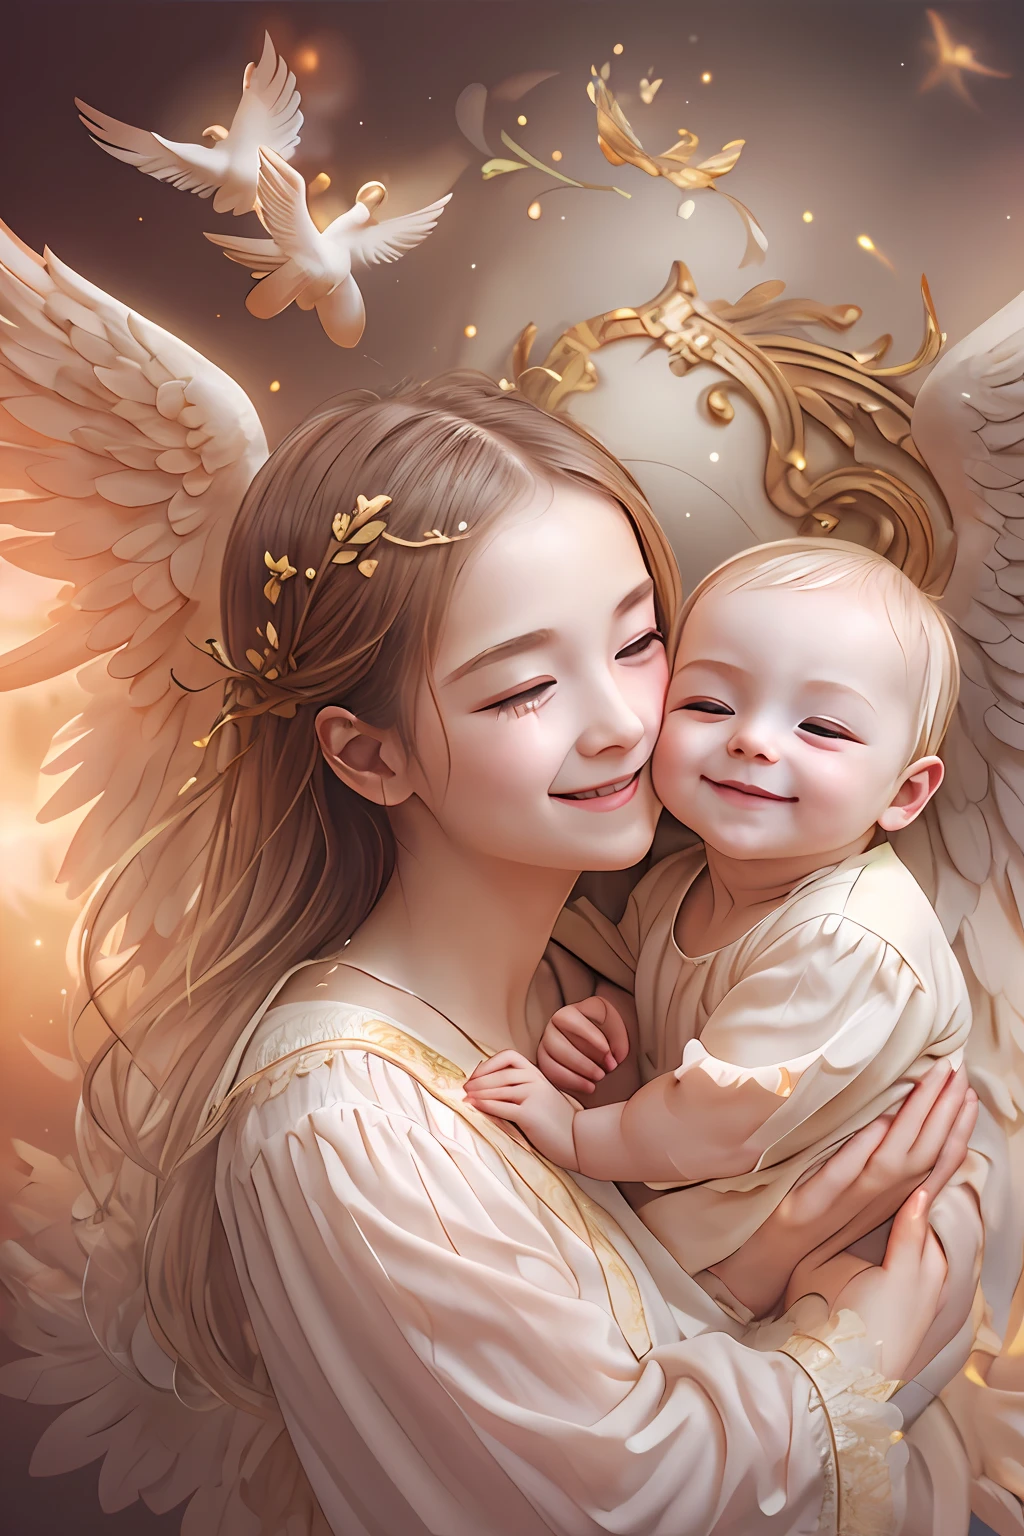 Bênçãos dos Anjos､fundo brilhante、marca de coração、ternura､Um sorriso、gentil､bebê anjo